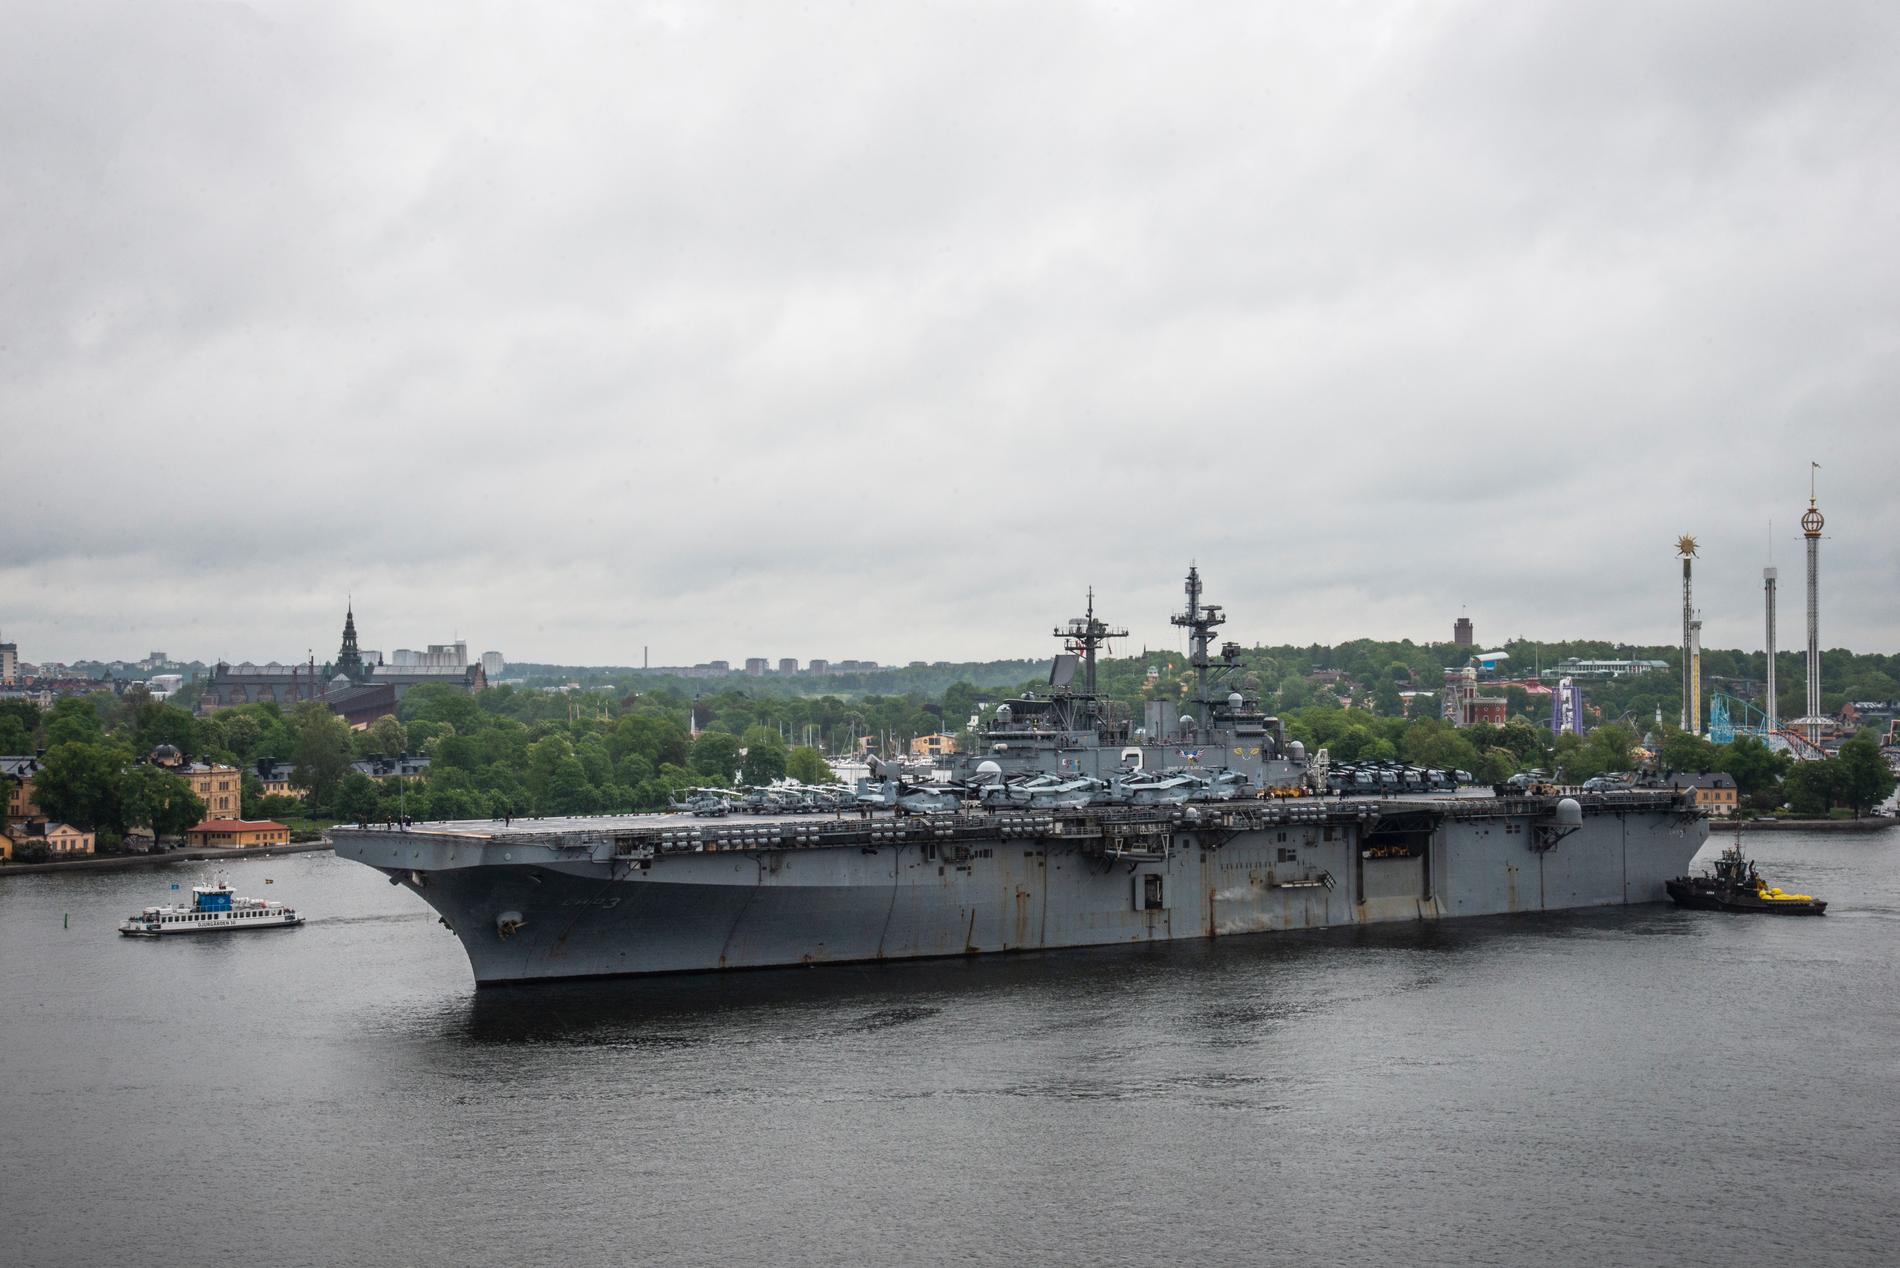 257 meter lång är hon, amerikanskan USS Kearsarge. 